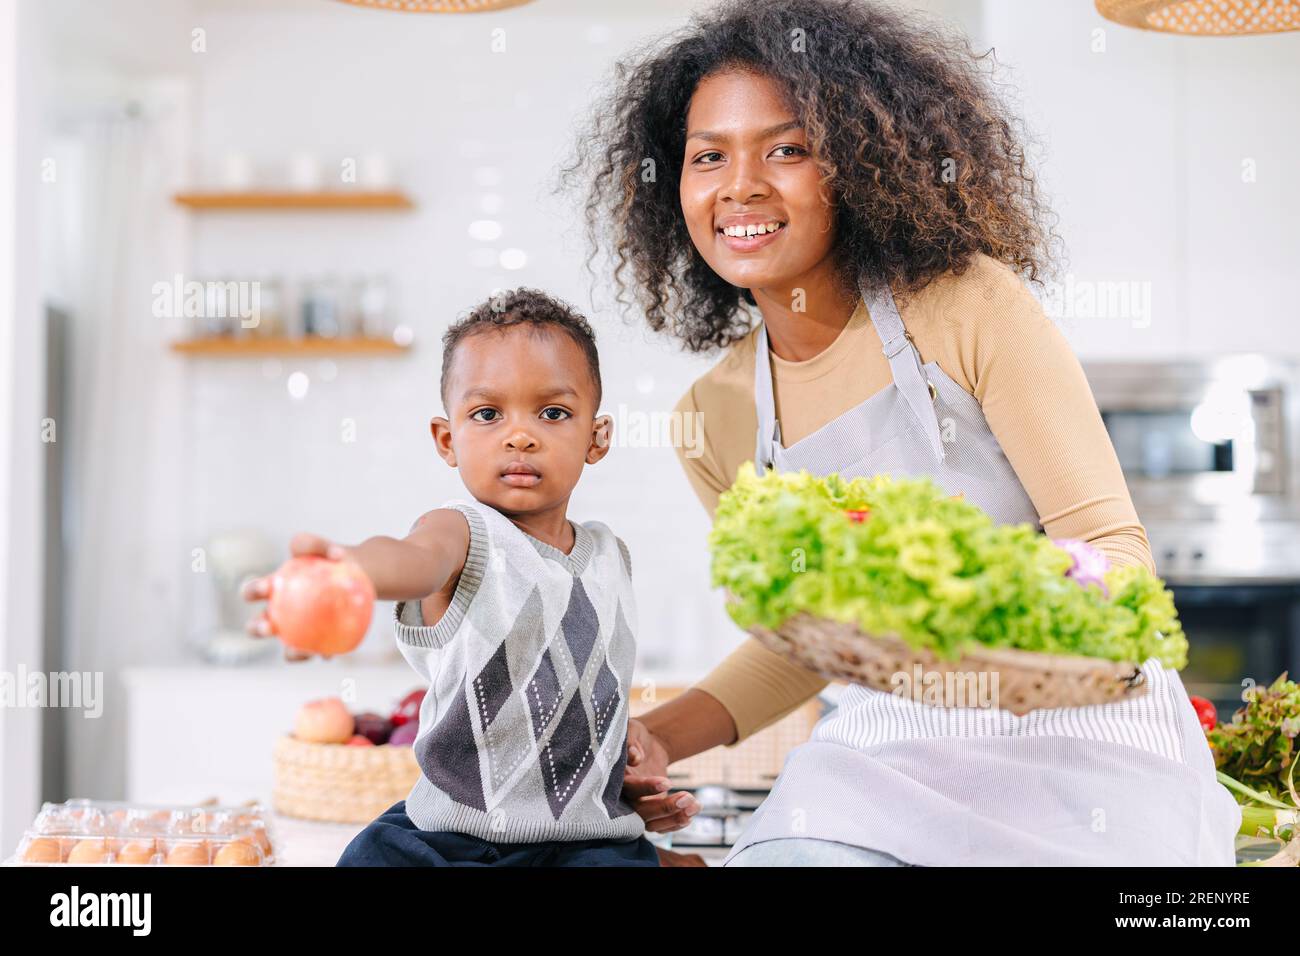 Mère noire africaine avec fils mignon portrait d'enfant heureux profiter de la cuisine saine des aliments à la maison cuisine activité de vacances Banque D'Images